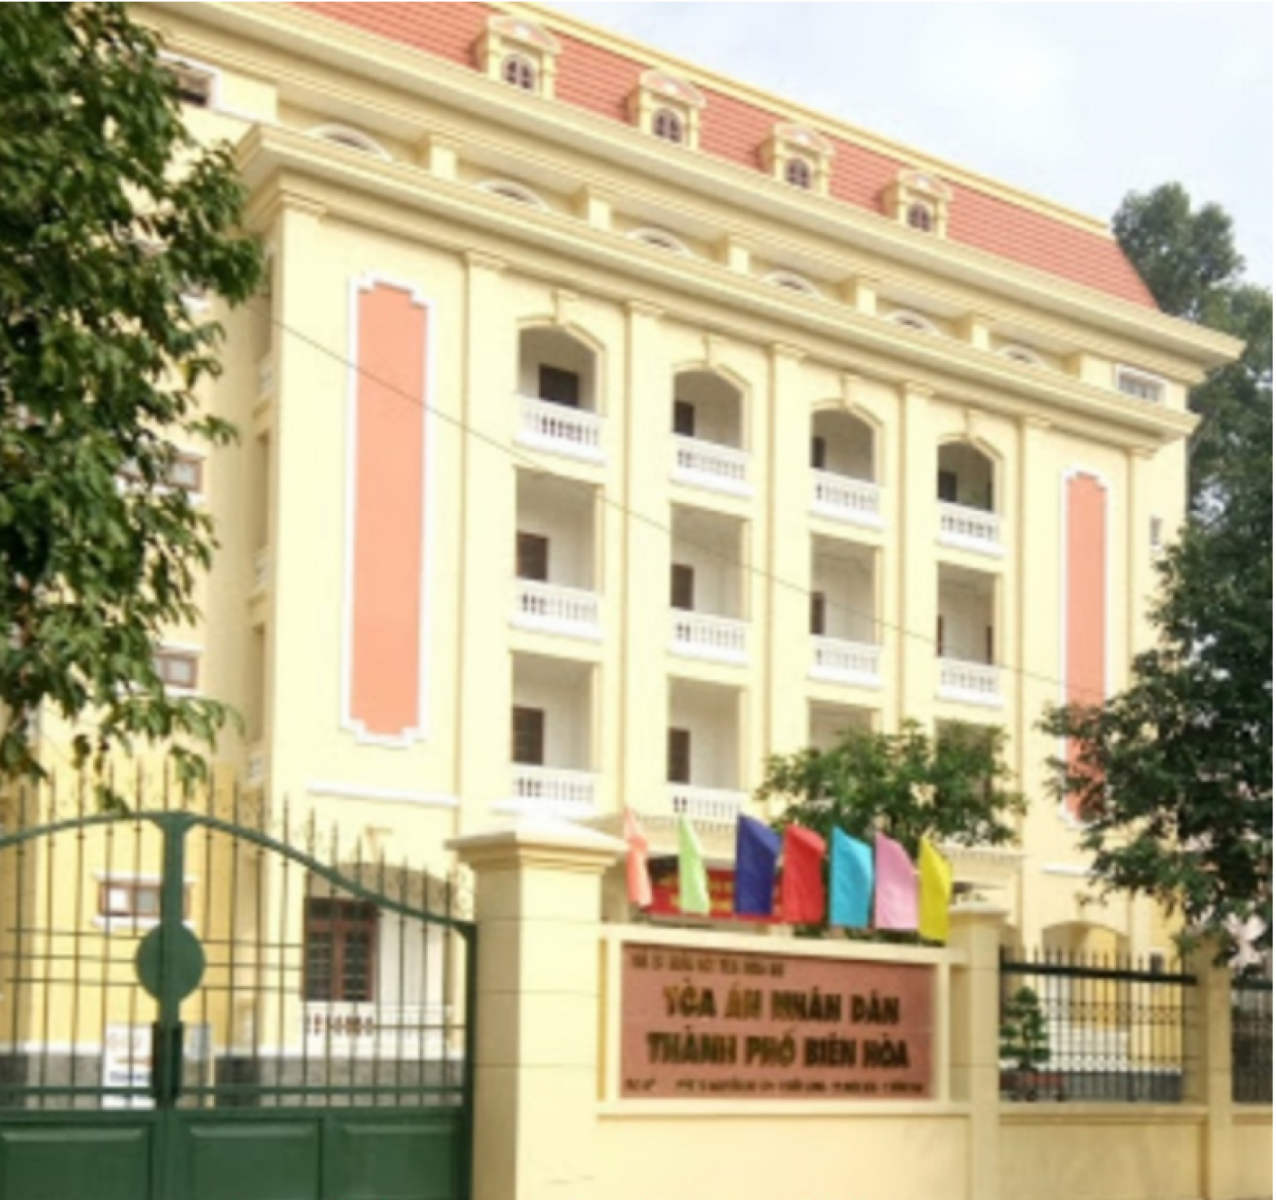 Thủ tục ly hôn đơn phương tại Biên Hòa - Luật sư ly hôn tại Biên Hòa